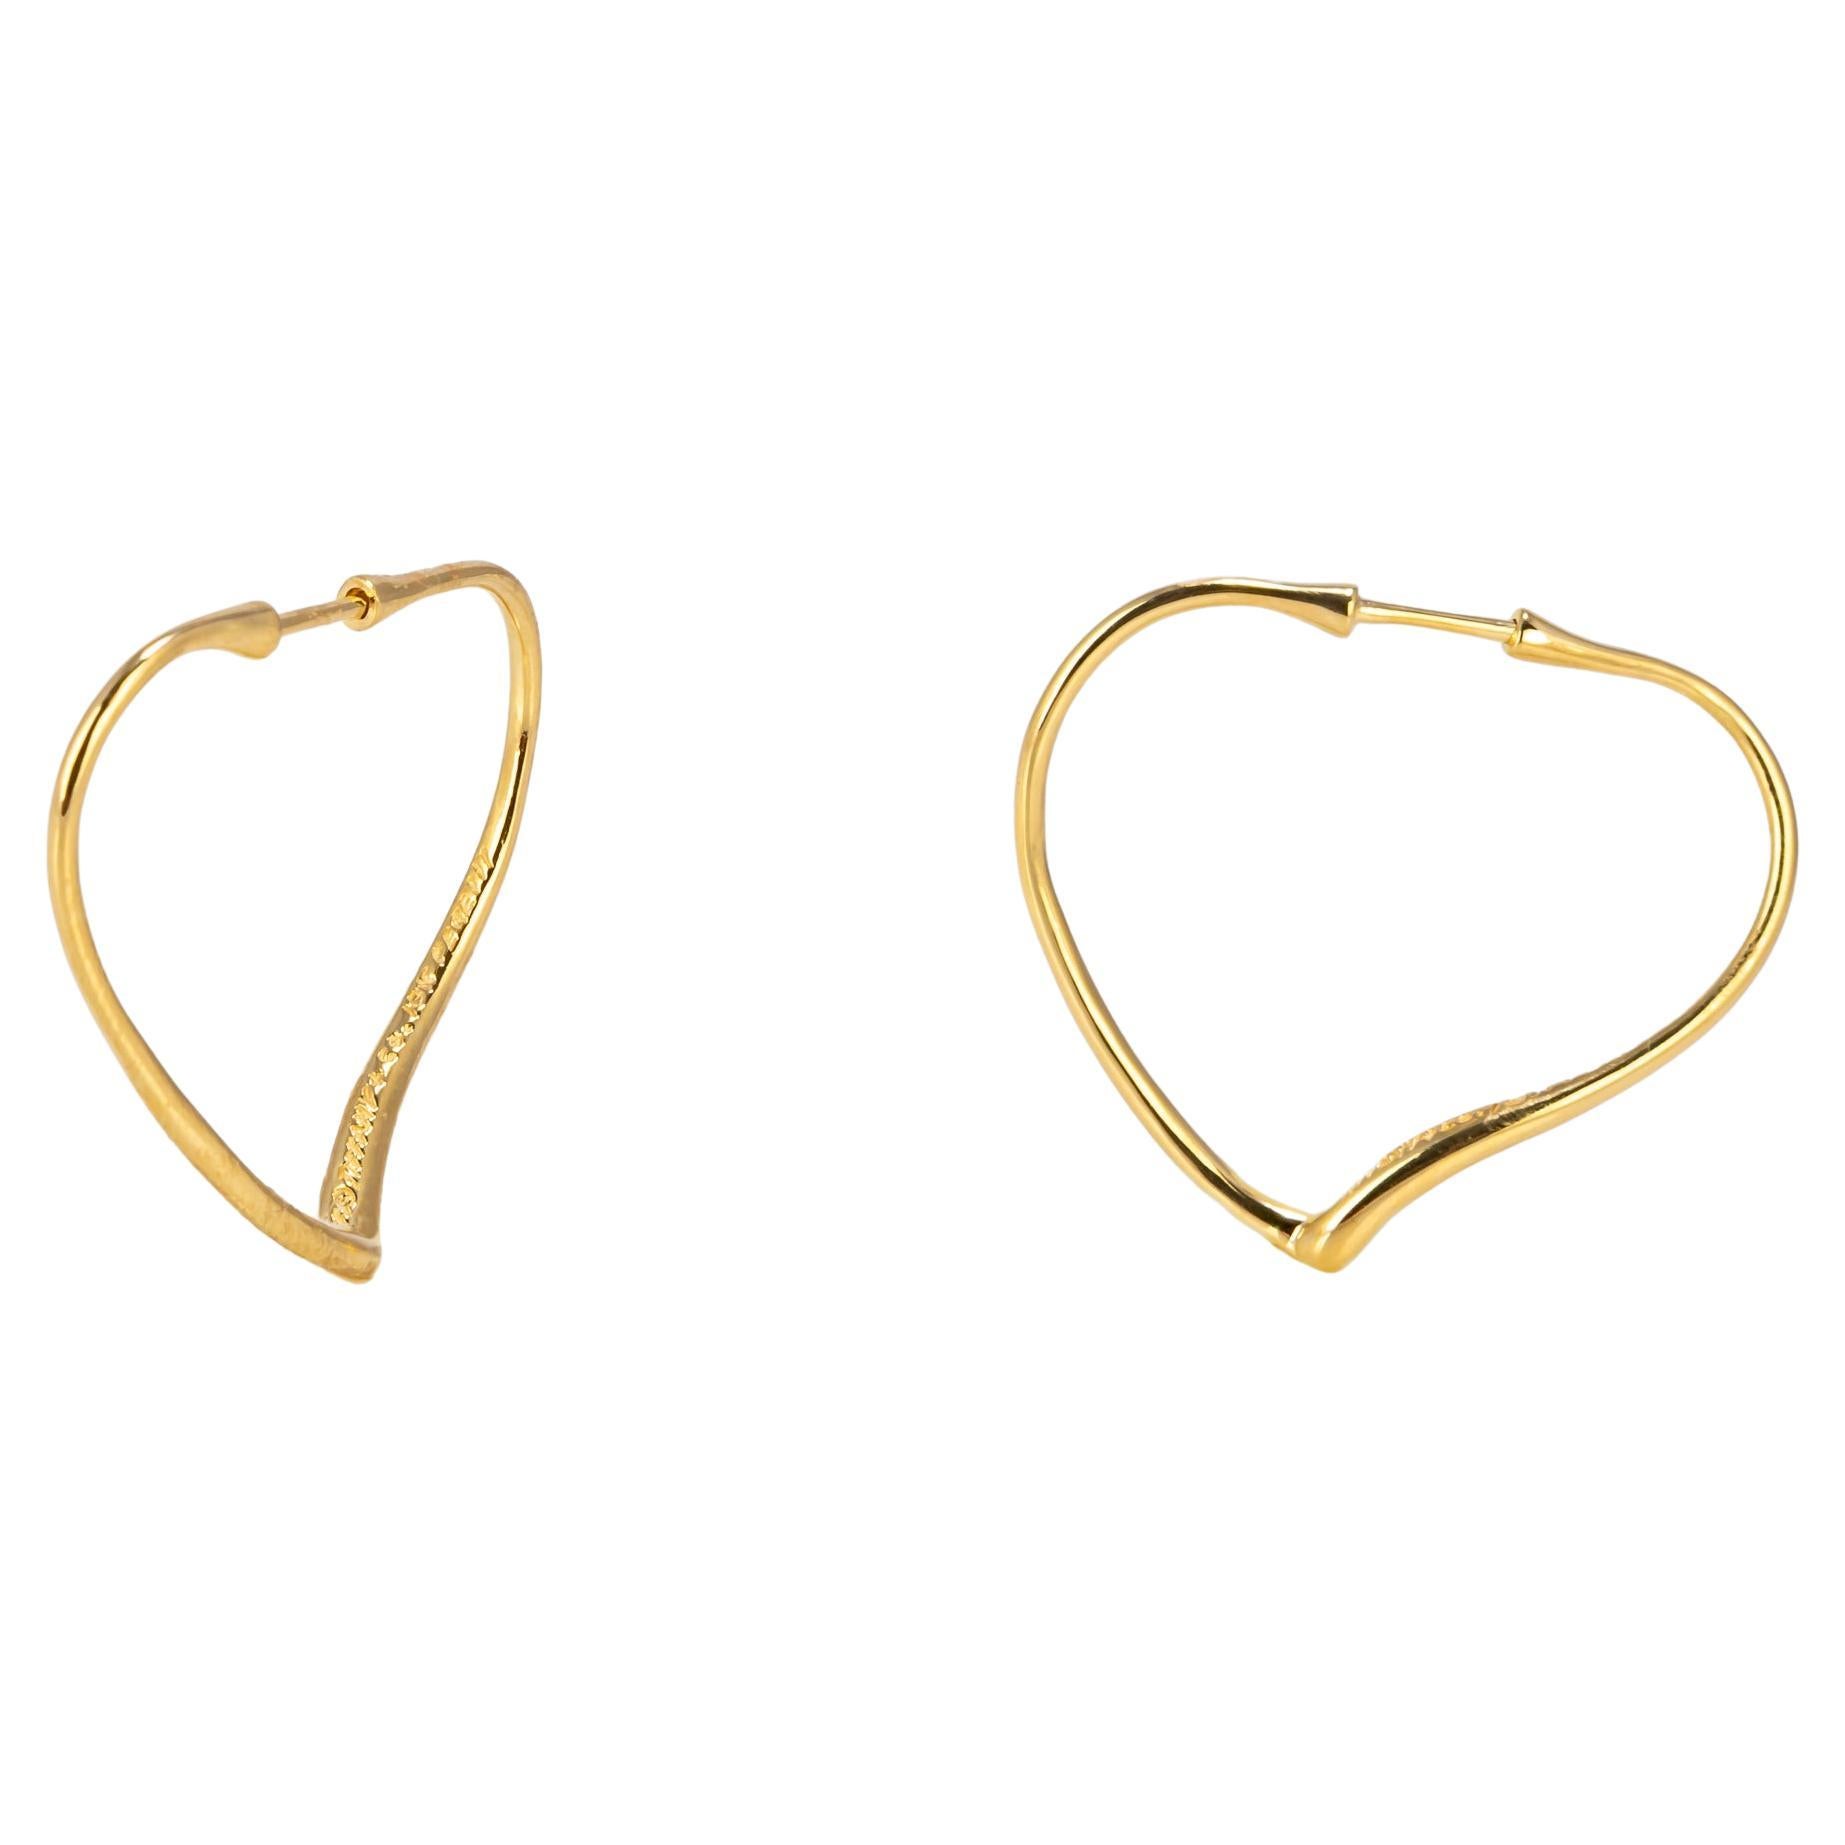 Elsa Peretti for Tiffany & Co. Open Heart Hoop Earrings